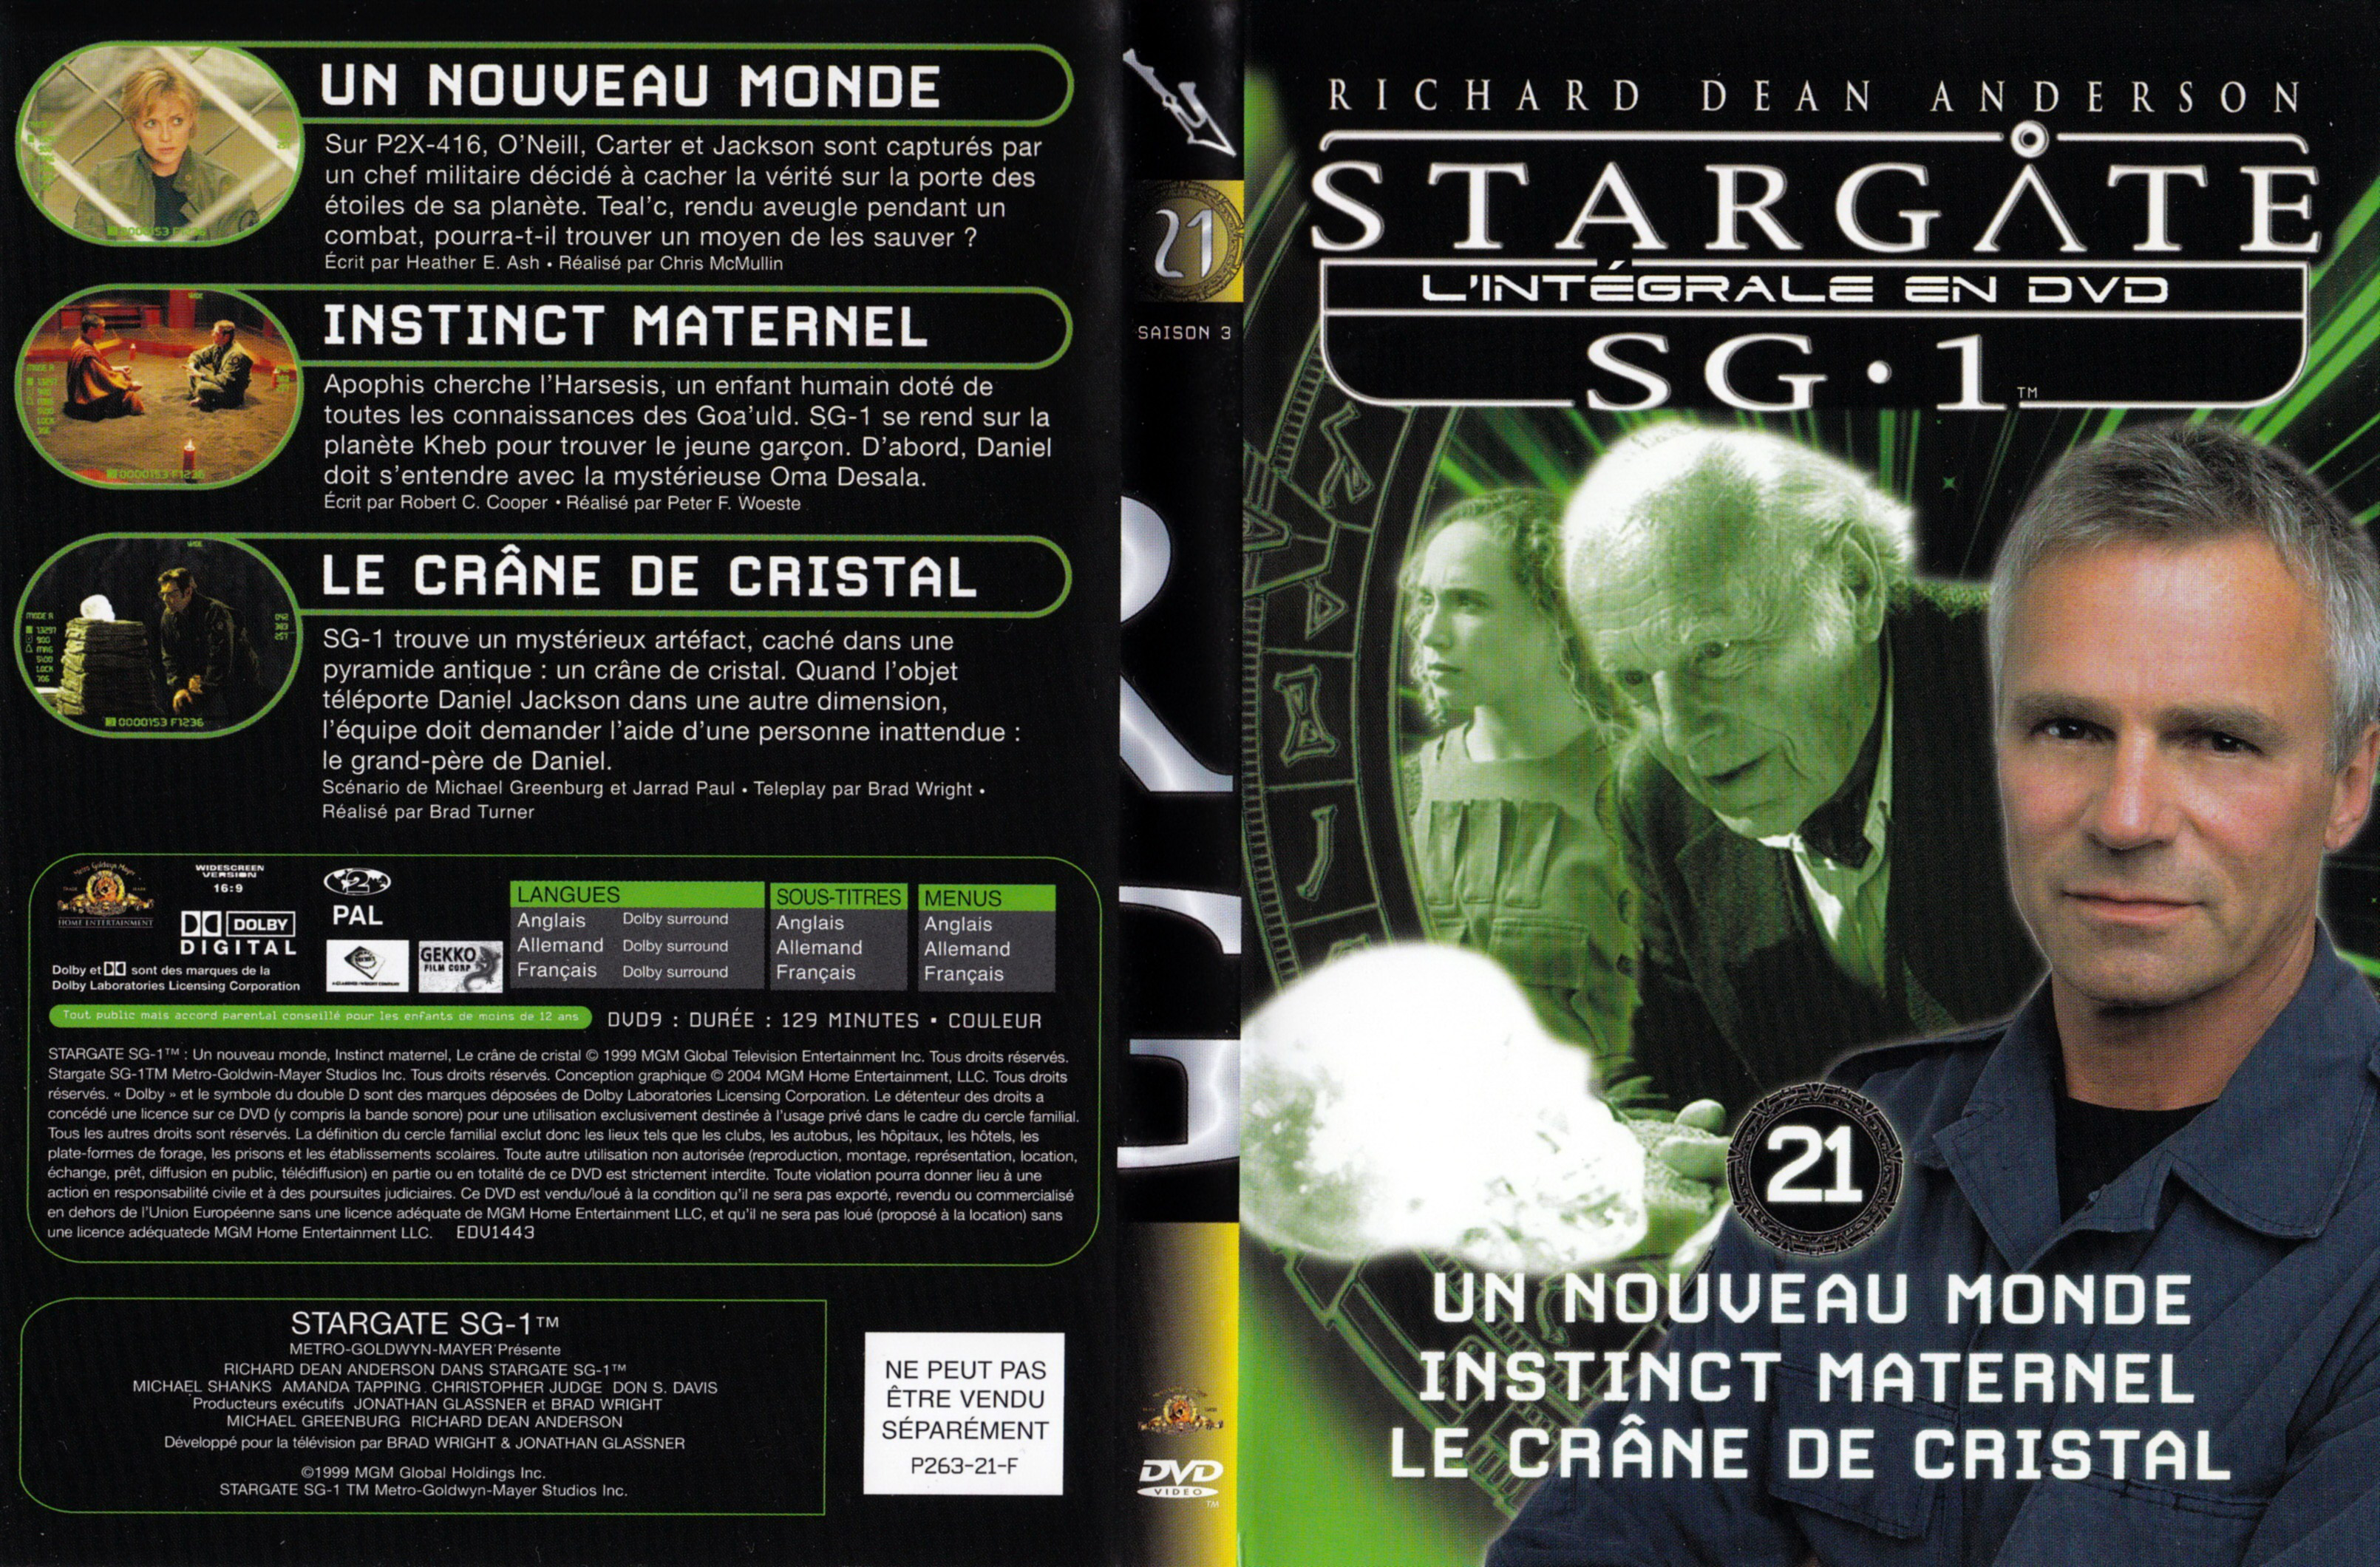 Jaquette DVD Stargate SG1 Intgrale Saison 3 vol 21